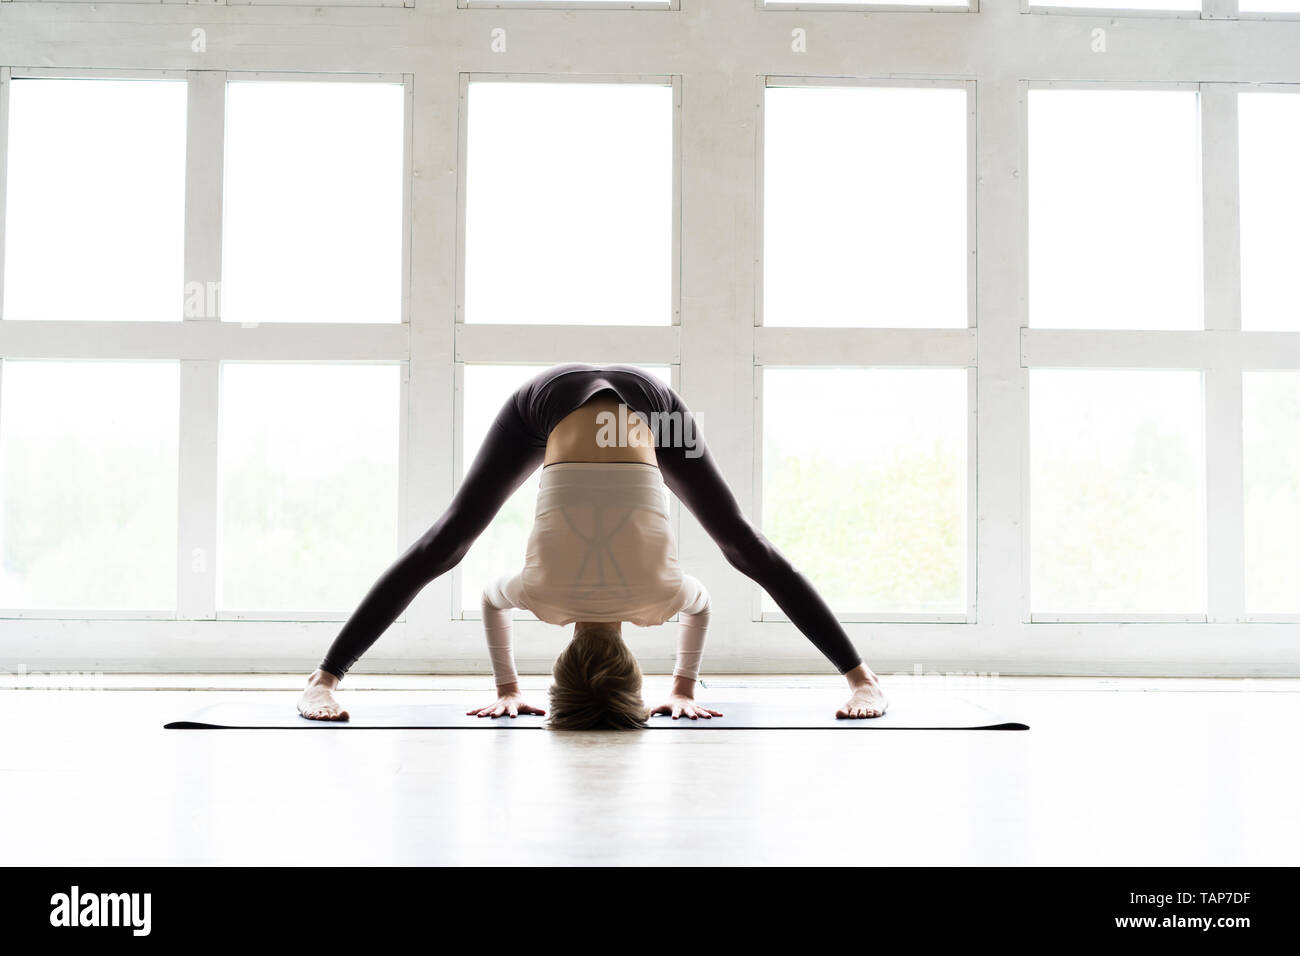 5 min Basics: Pyramid Pose | Peloton Yoga Classes